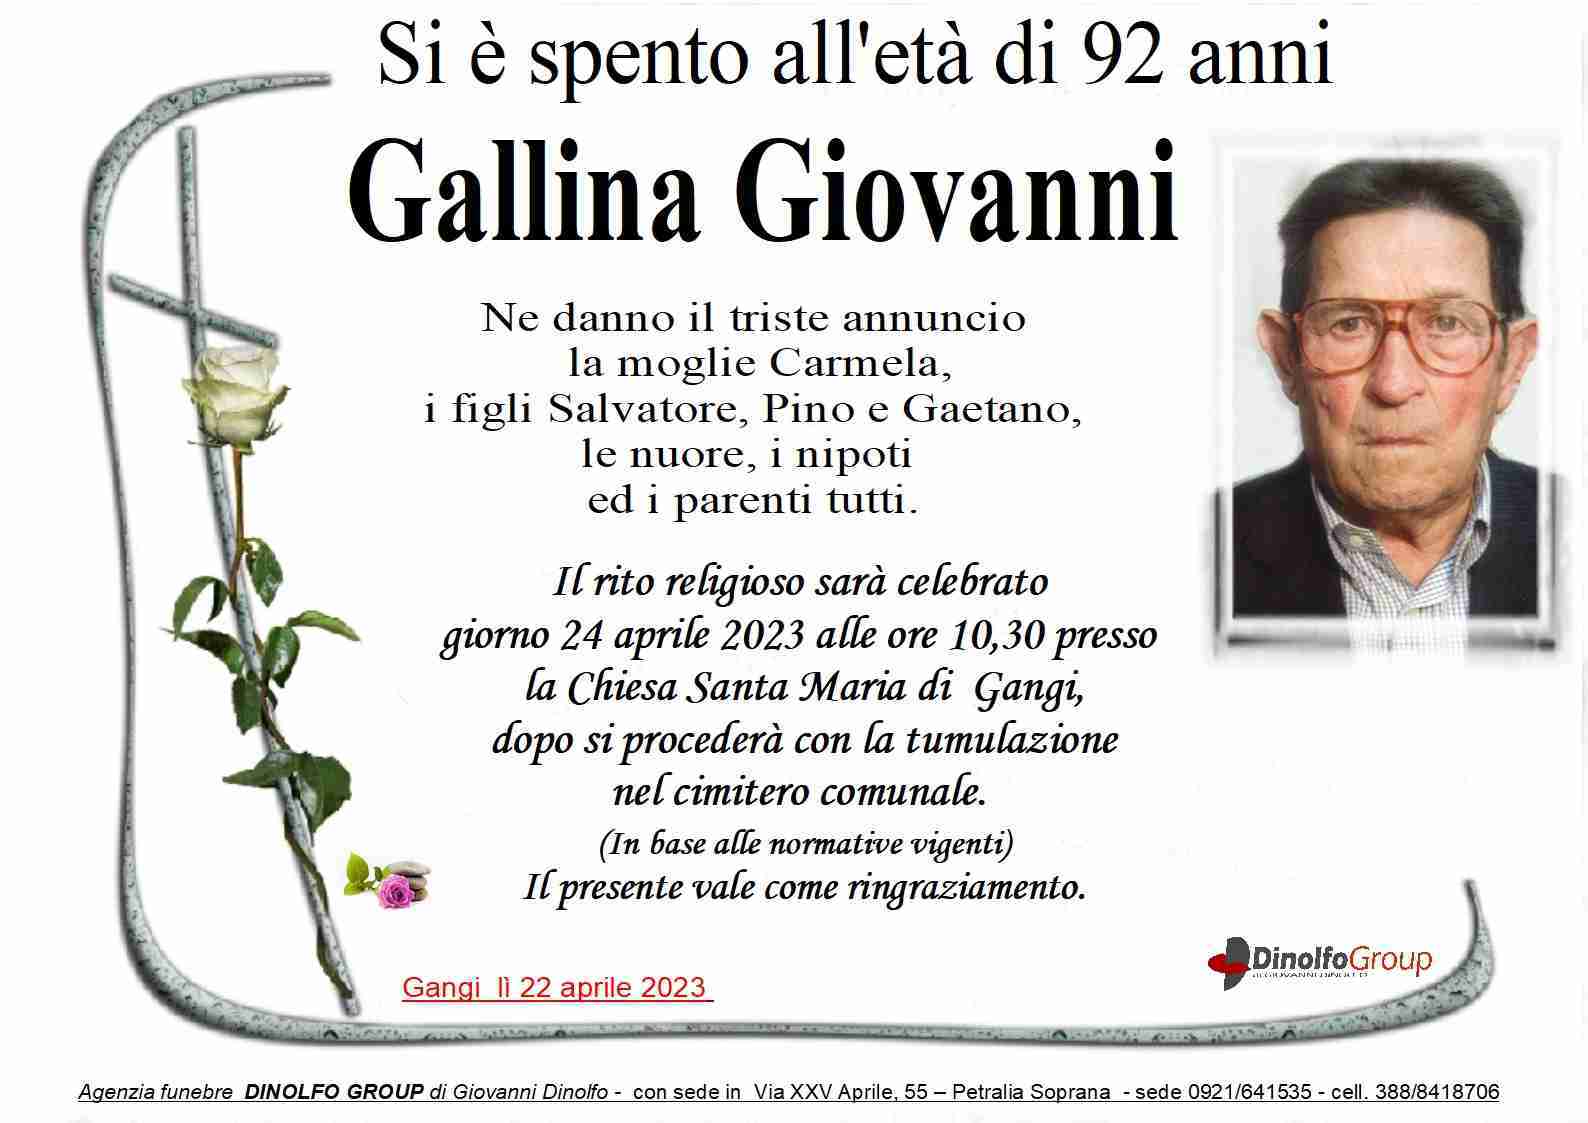 Gallina Giovanni